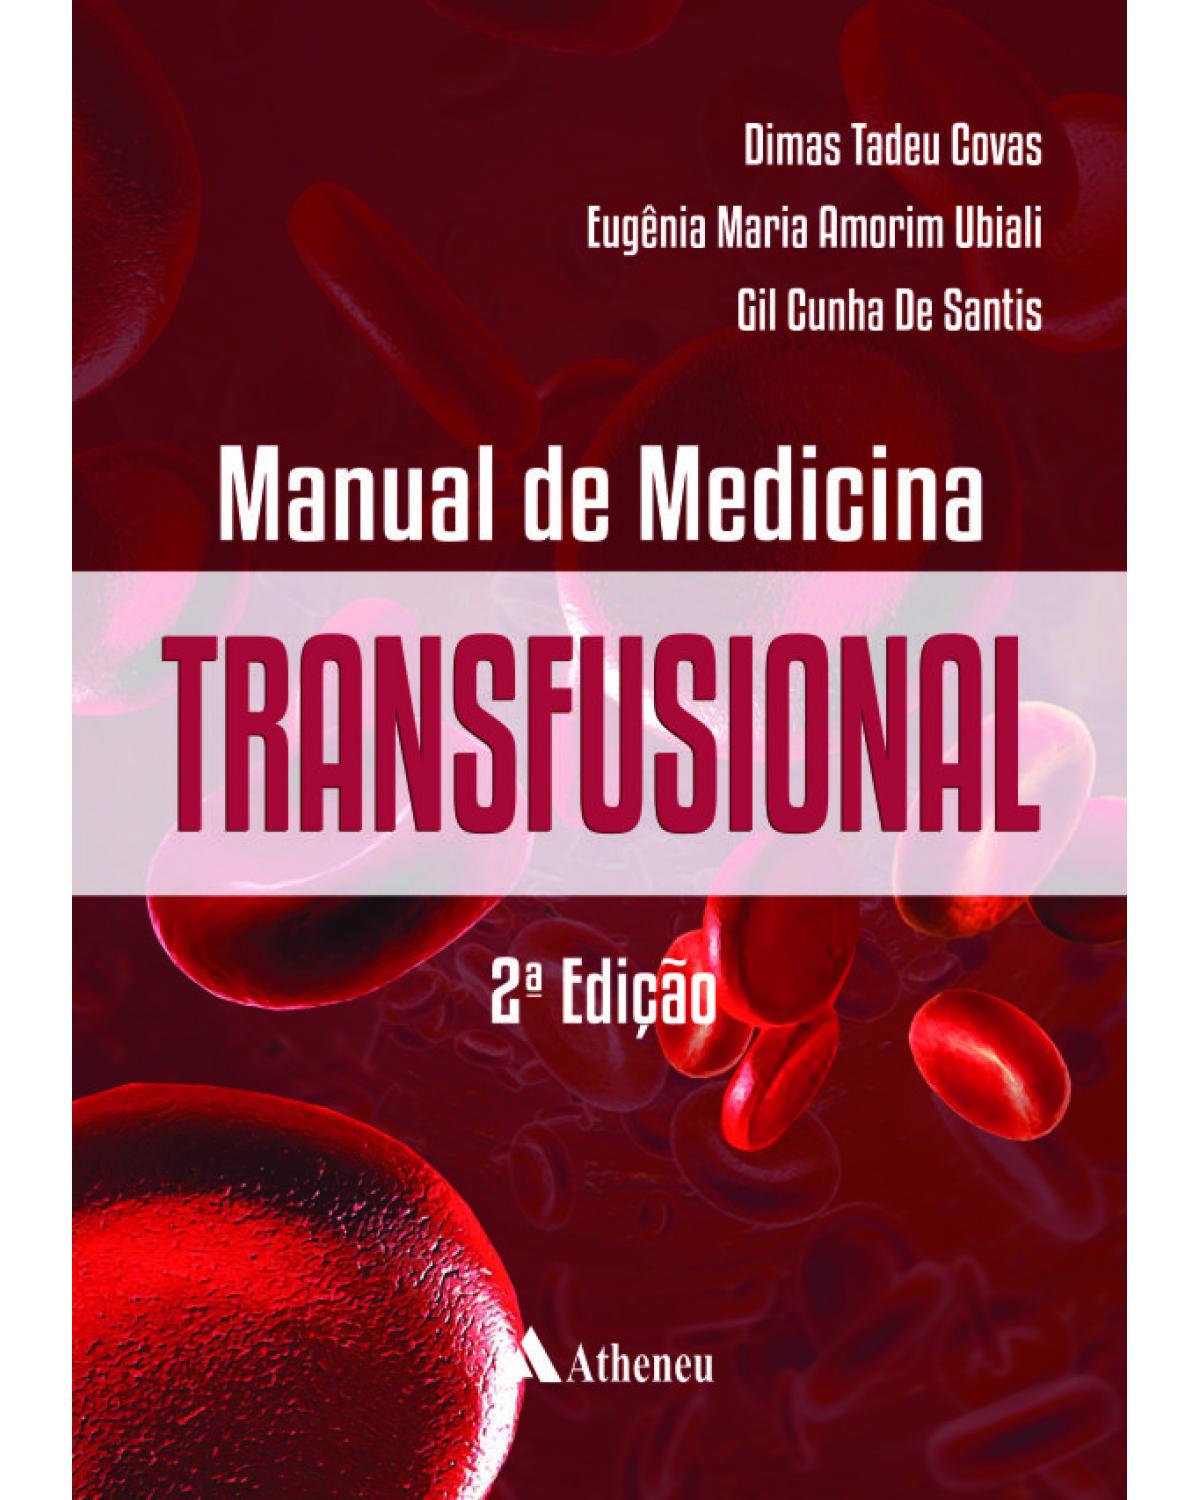 Manual de medicina transfusional - 2ª Edição | 2014